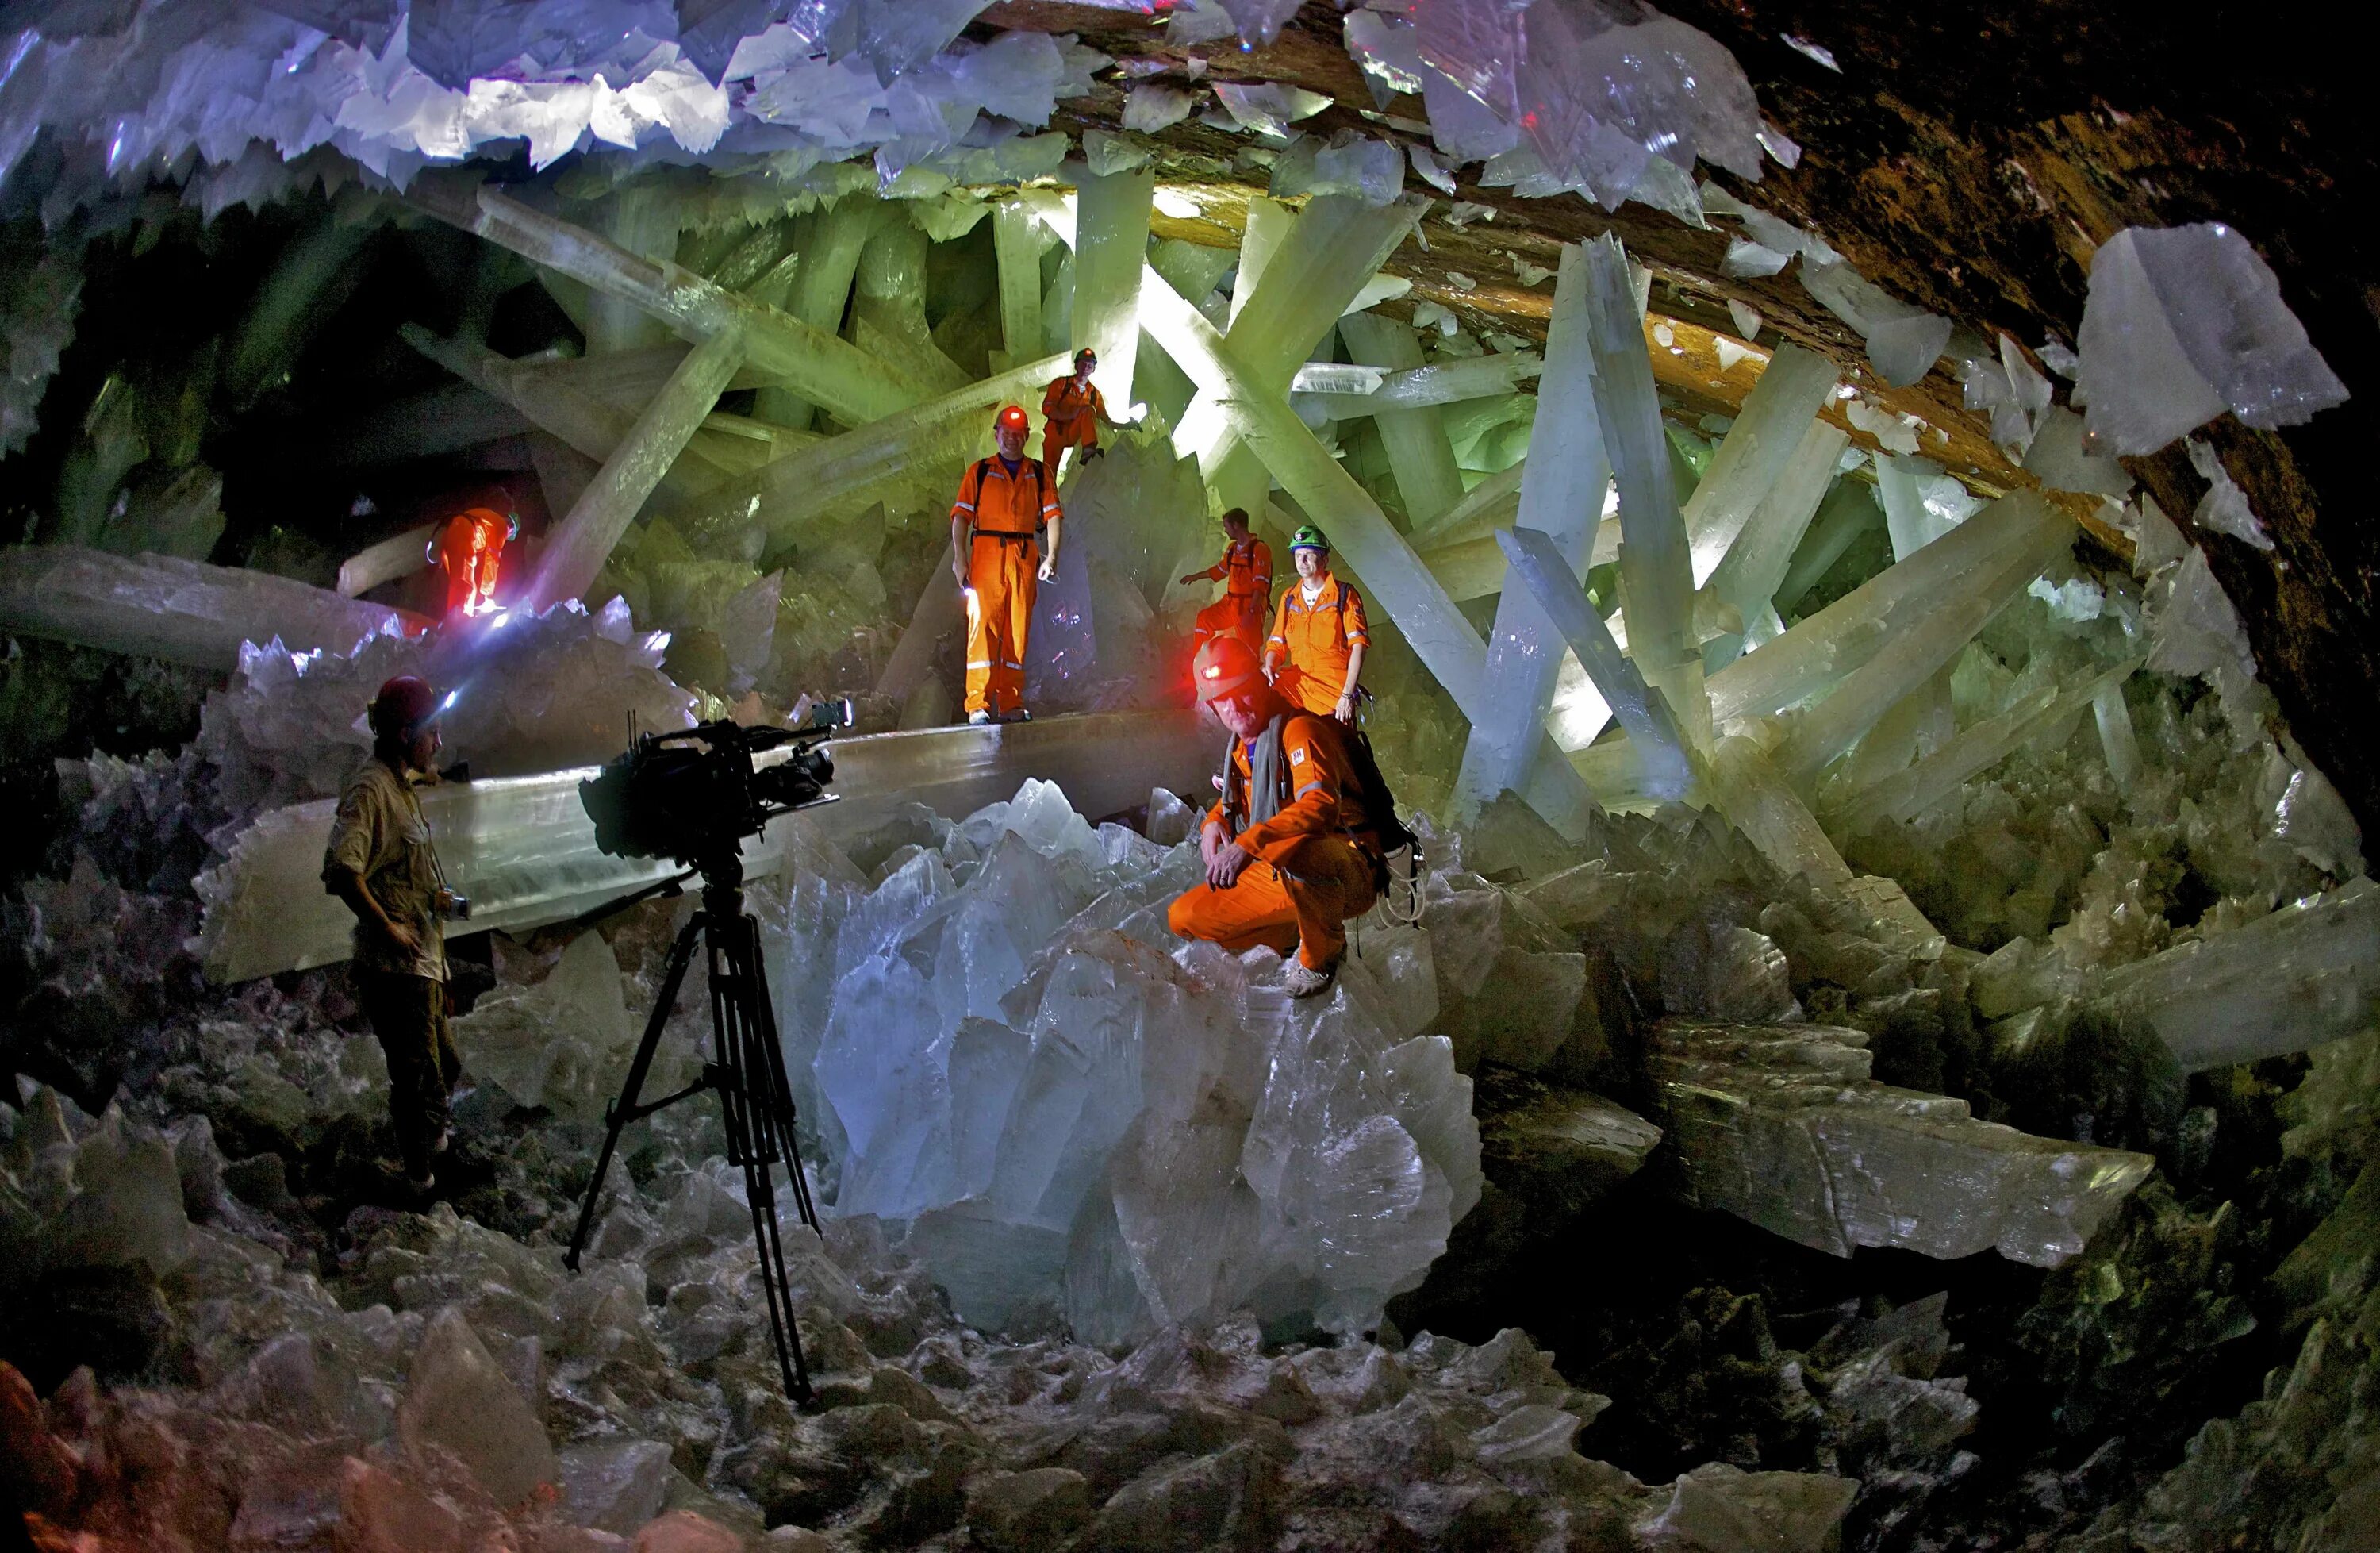 Кристалл шахты. Пещера кристаллов гигантов в Мексике. Пещера кристаллов (Cueva de los cristales), Мексика. Шахта Найка, Мексика. Пещера кристаллов Найка в Мексике.